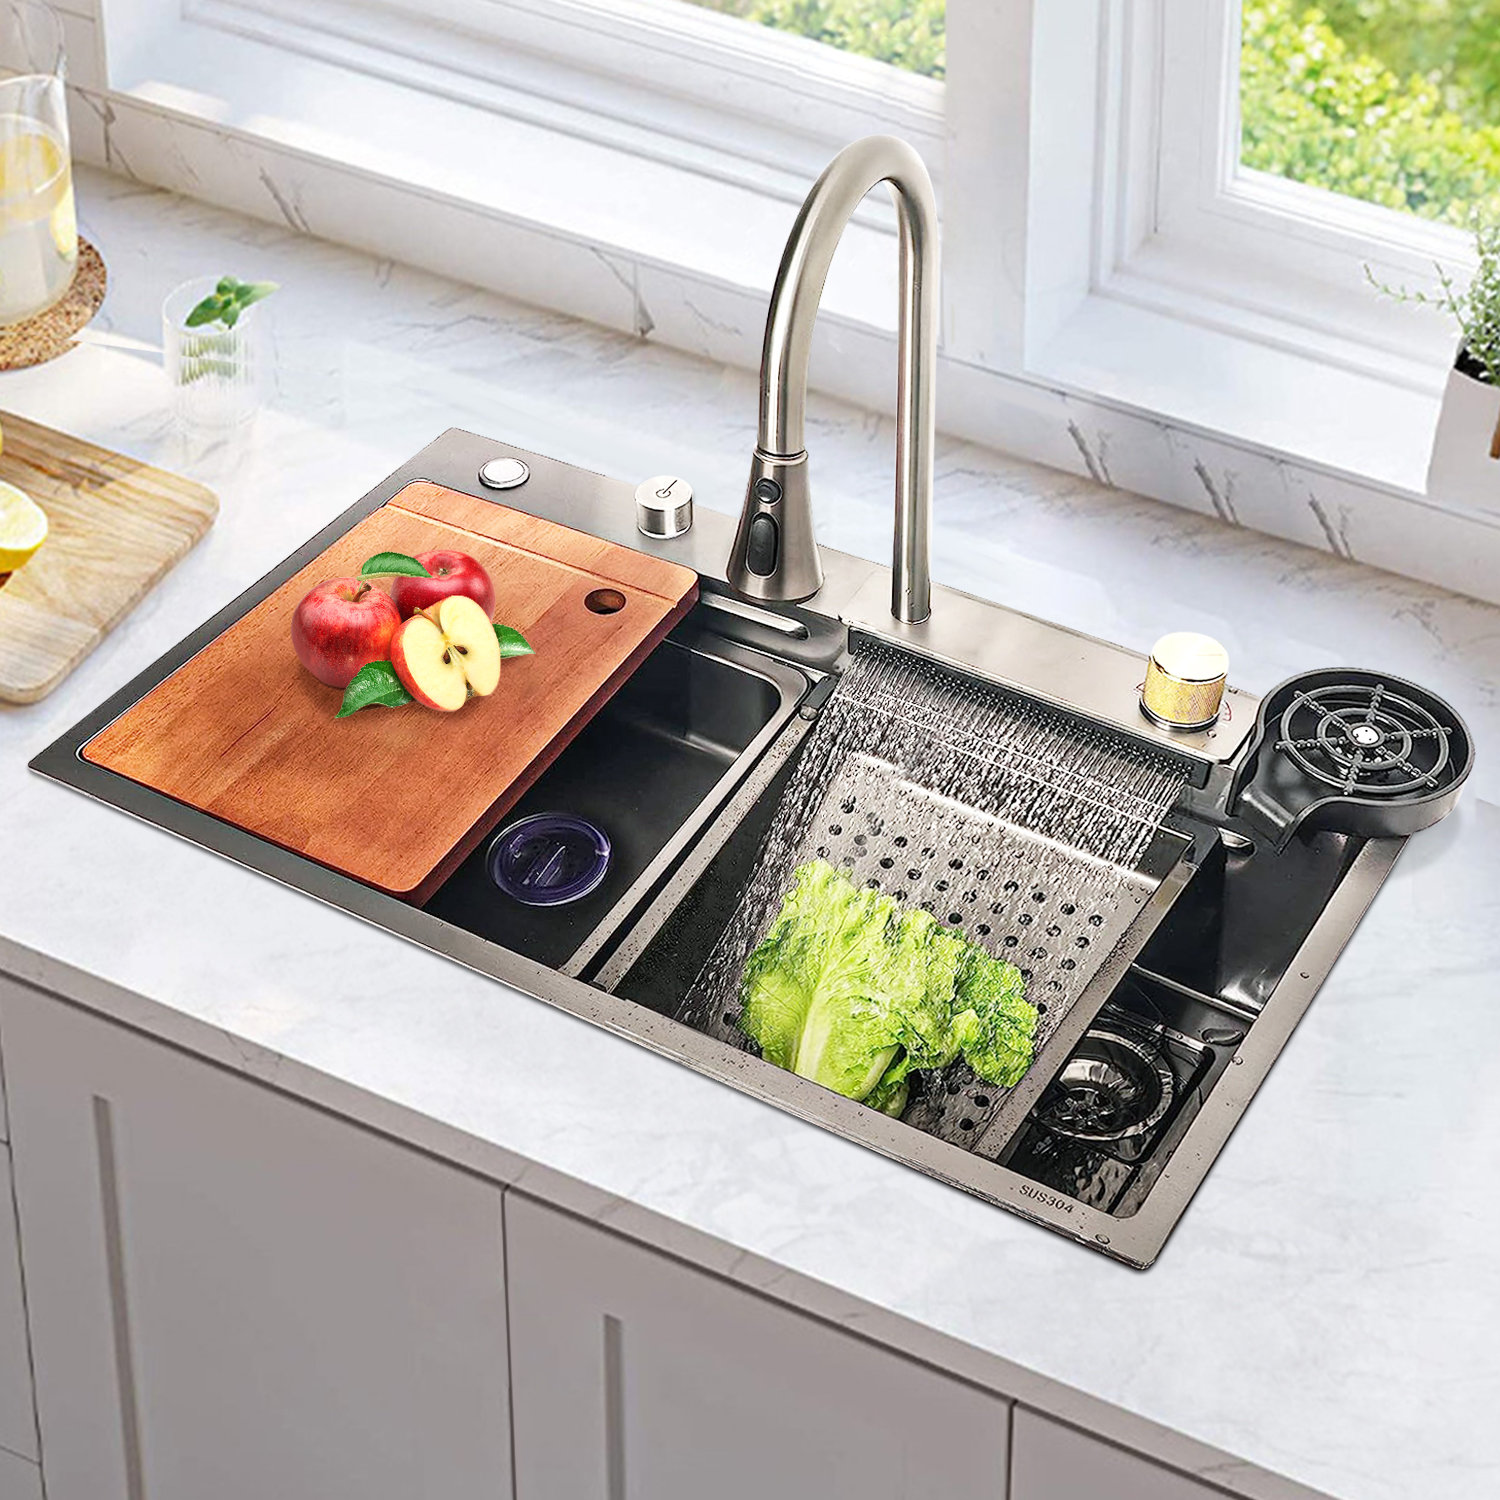 https://assets.wfcdn.com/im/30294858/compr-r85/2518/251891480/29-l-undermount-single-bowl-stainless-steel-kitchen-sink.jpg